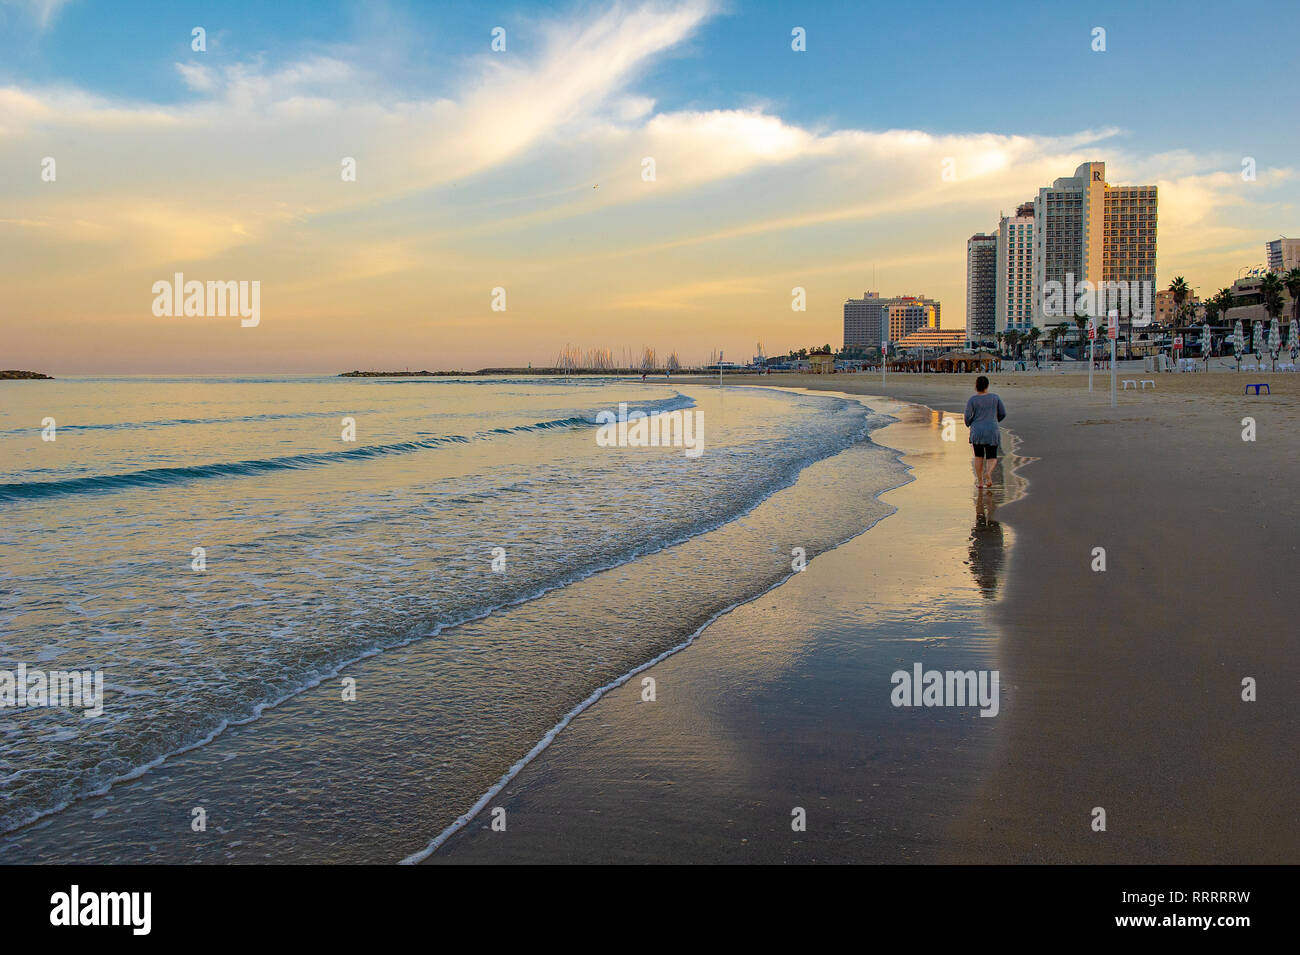 Aller pour une personne, footing le long de la Tayelet, Tel Aviv's plage urbaine, Tel Aviv, Israël Banque D'Images